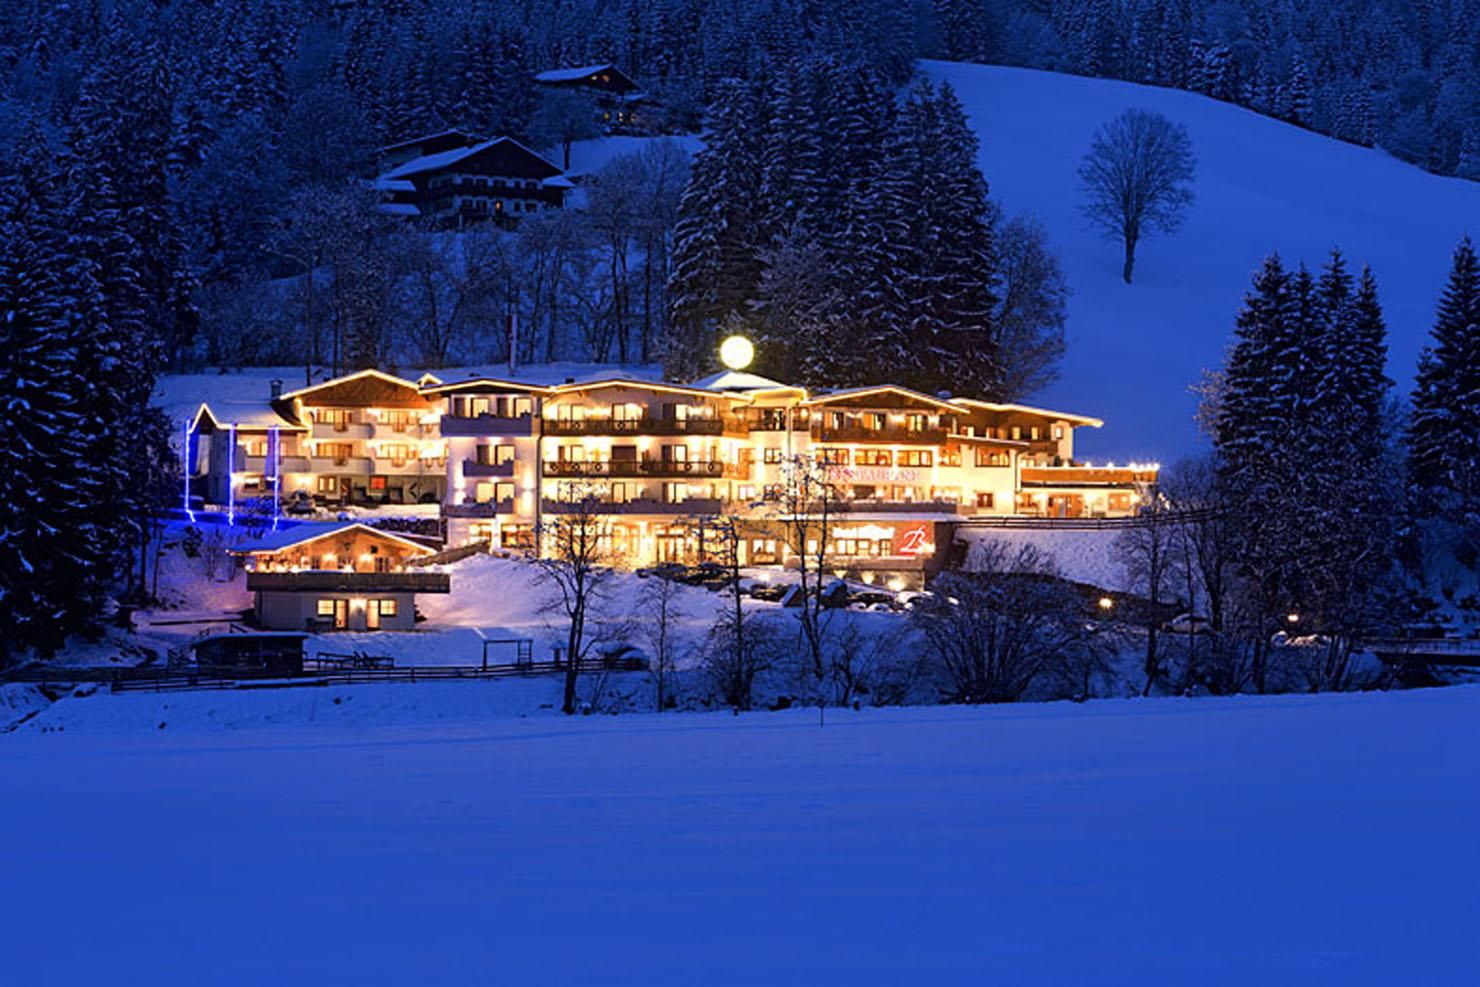 Slide1 - Hotel Berghof